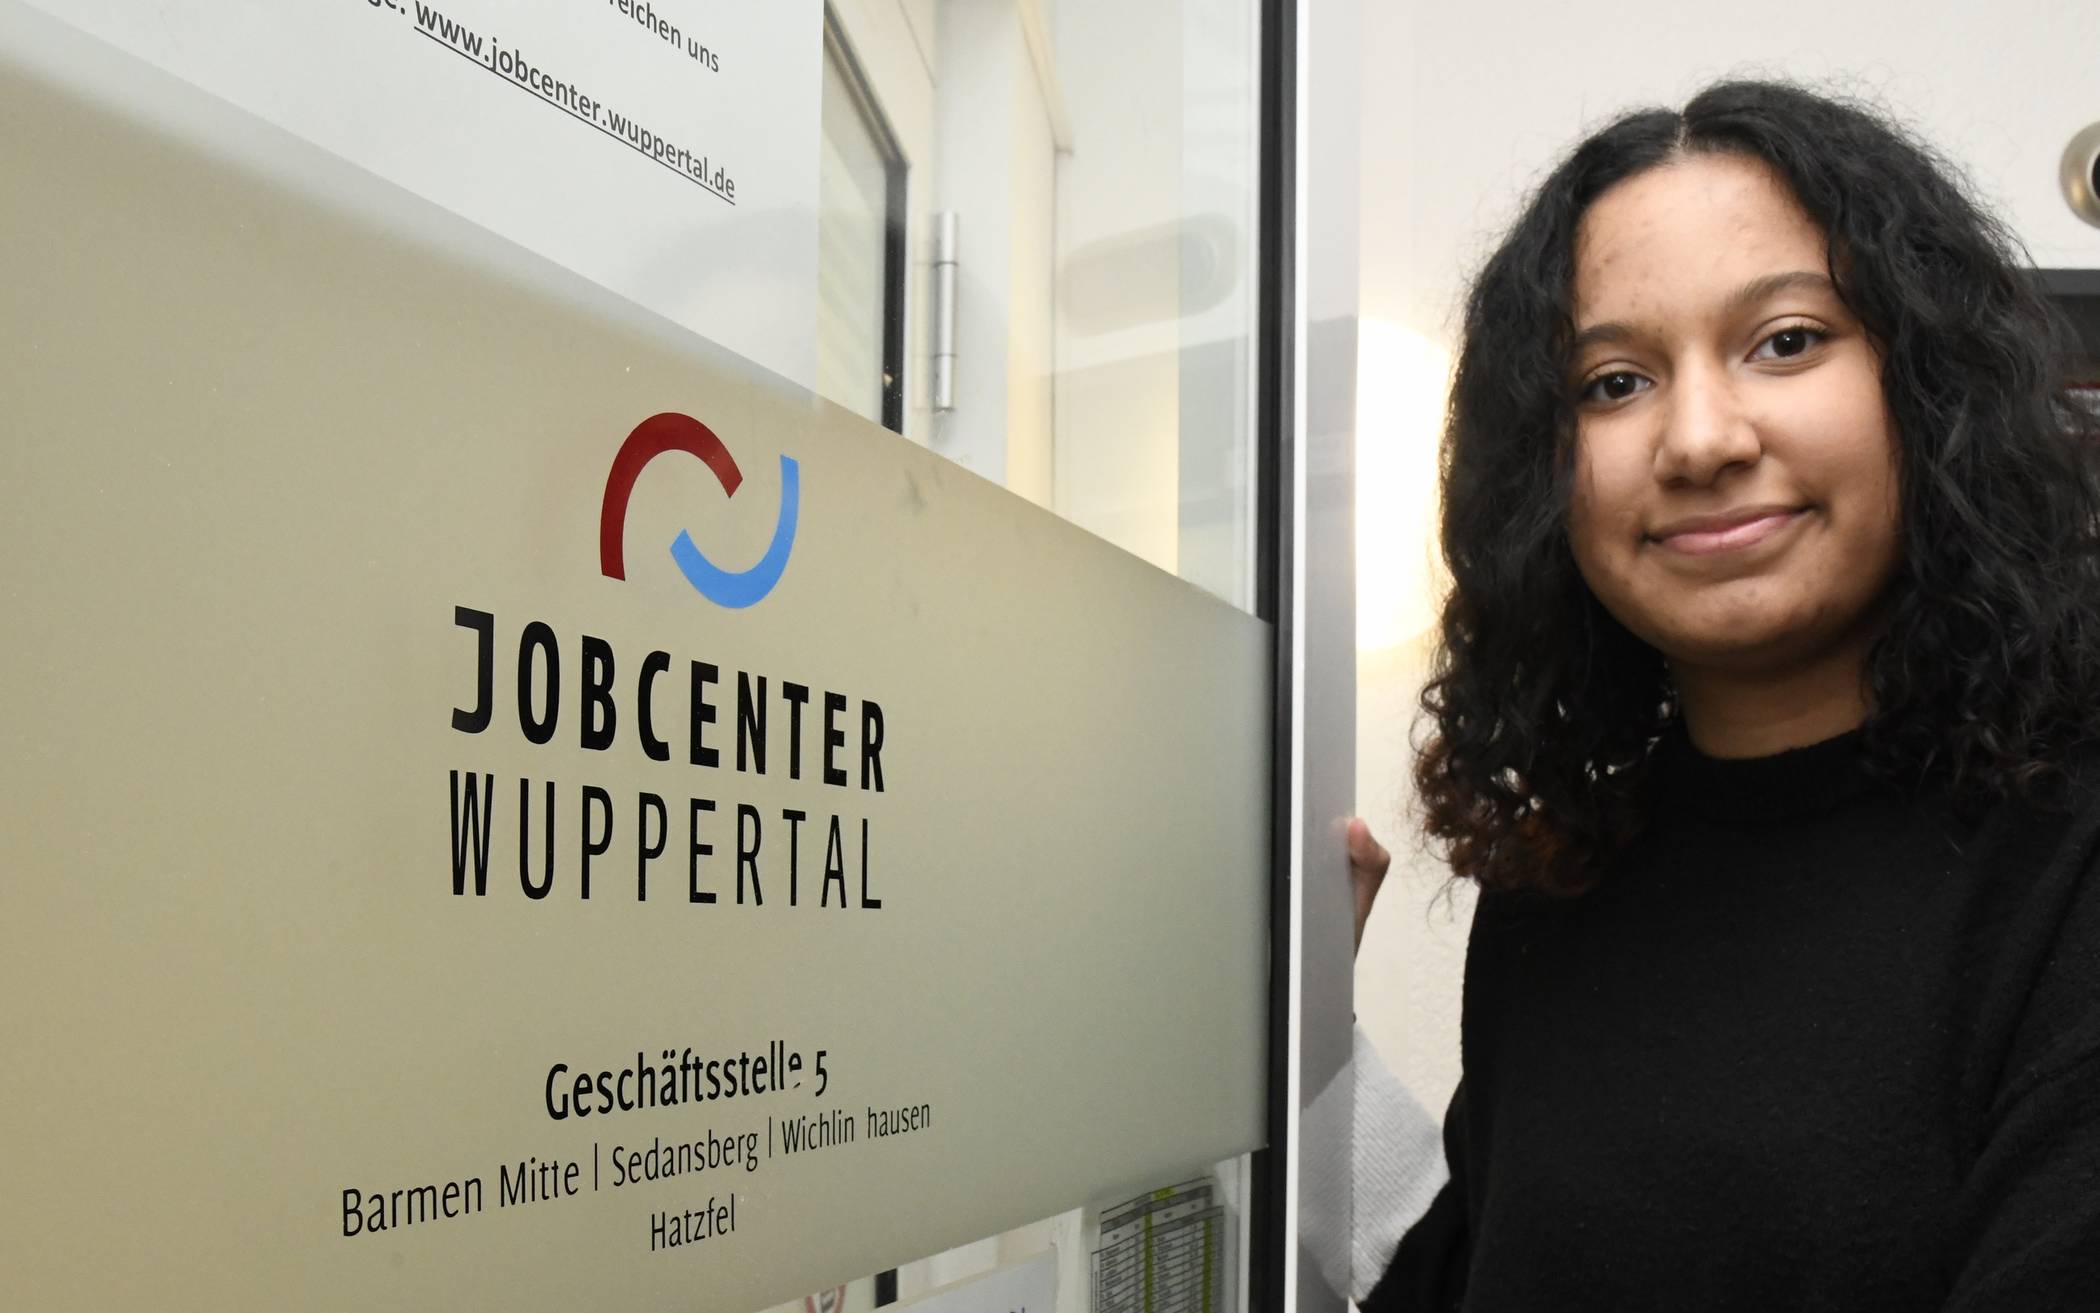 Samantha Josephine macht ein Duales Studium beim Jobcenter